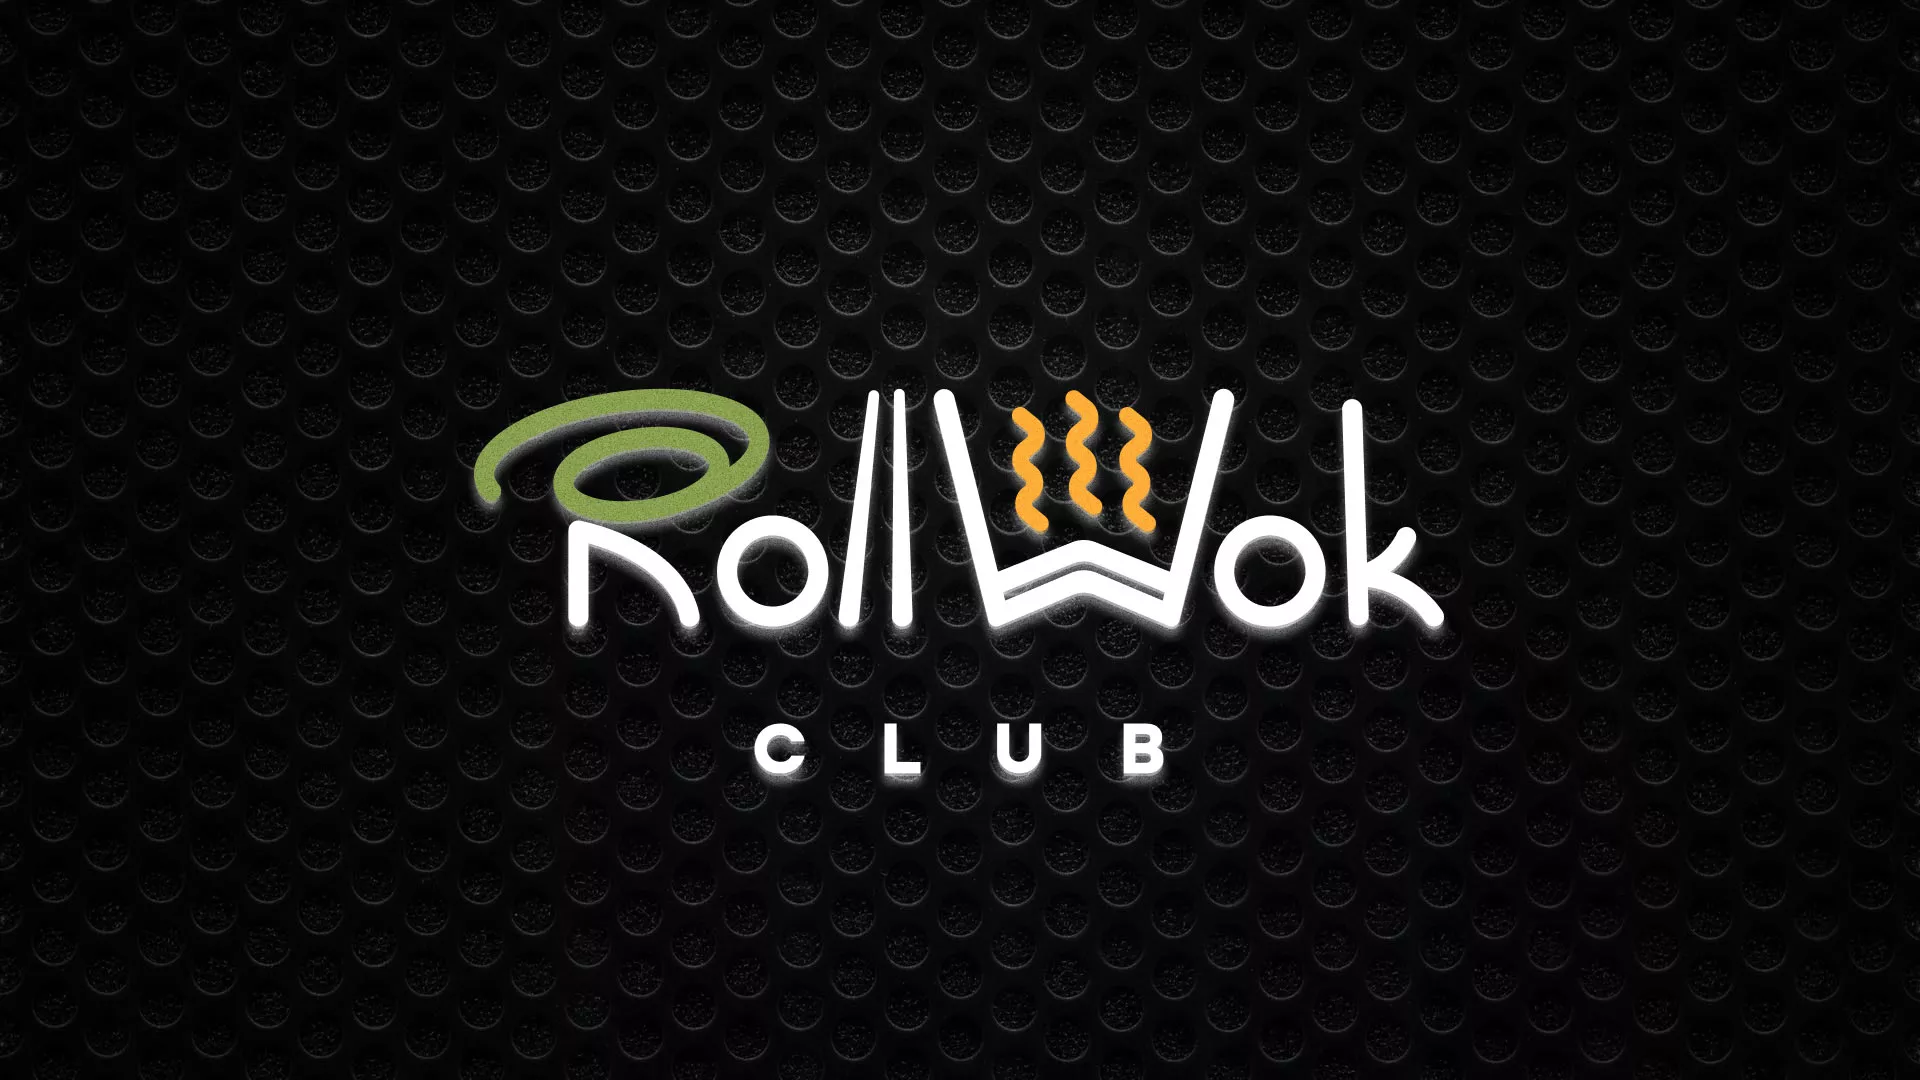 Брендирование торговых точек суши-бара «Roll Wok Club» в Любиме